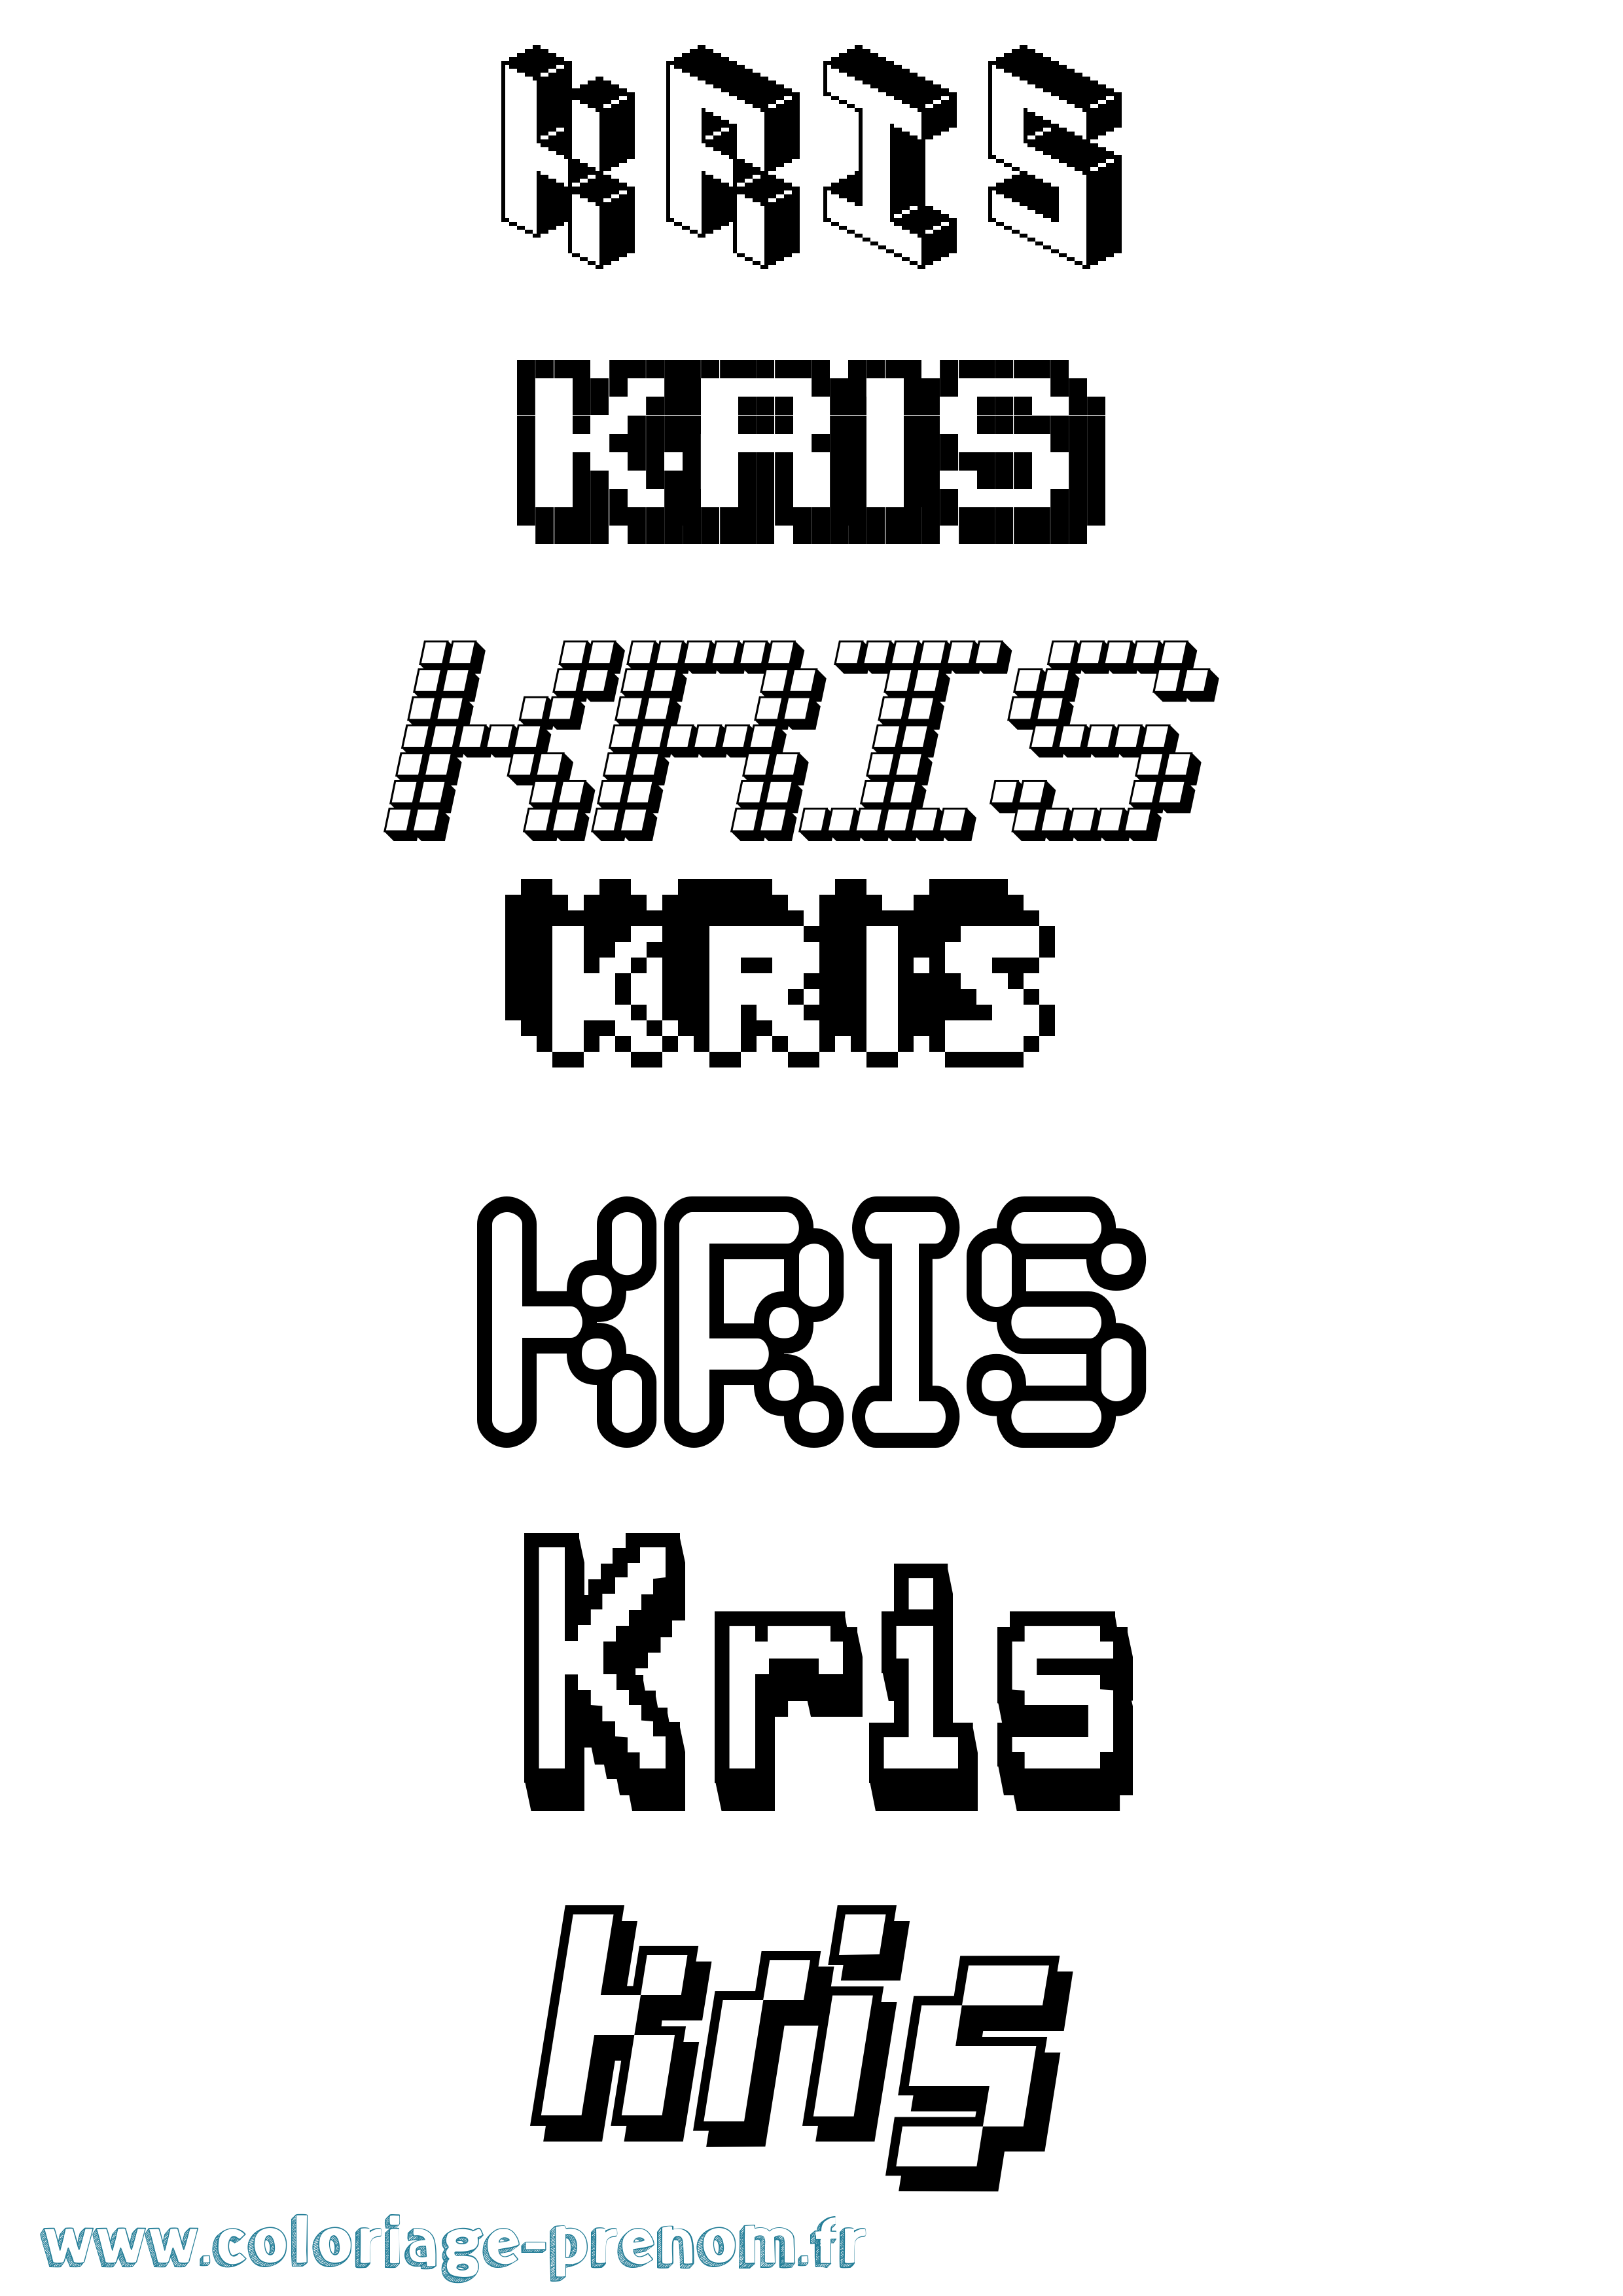 Coloriage prénom Kris Pixel